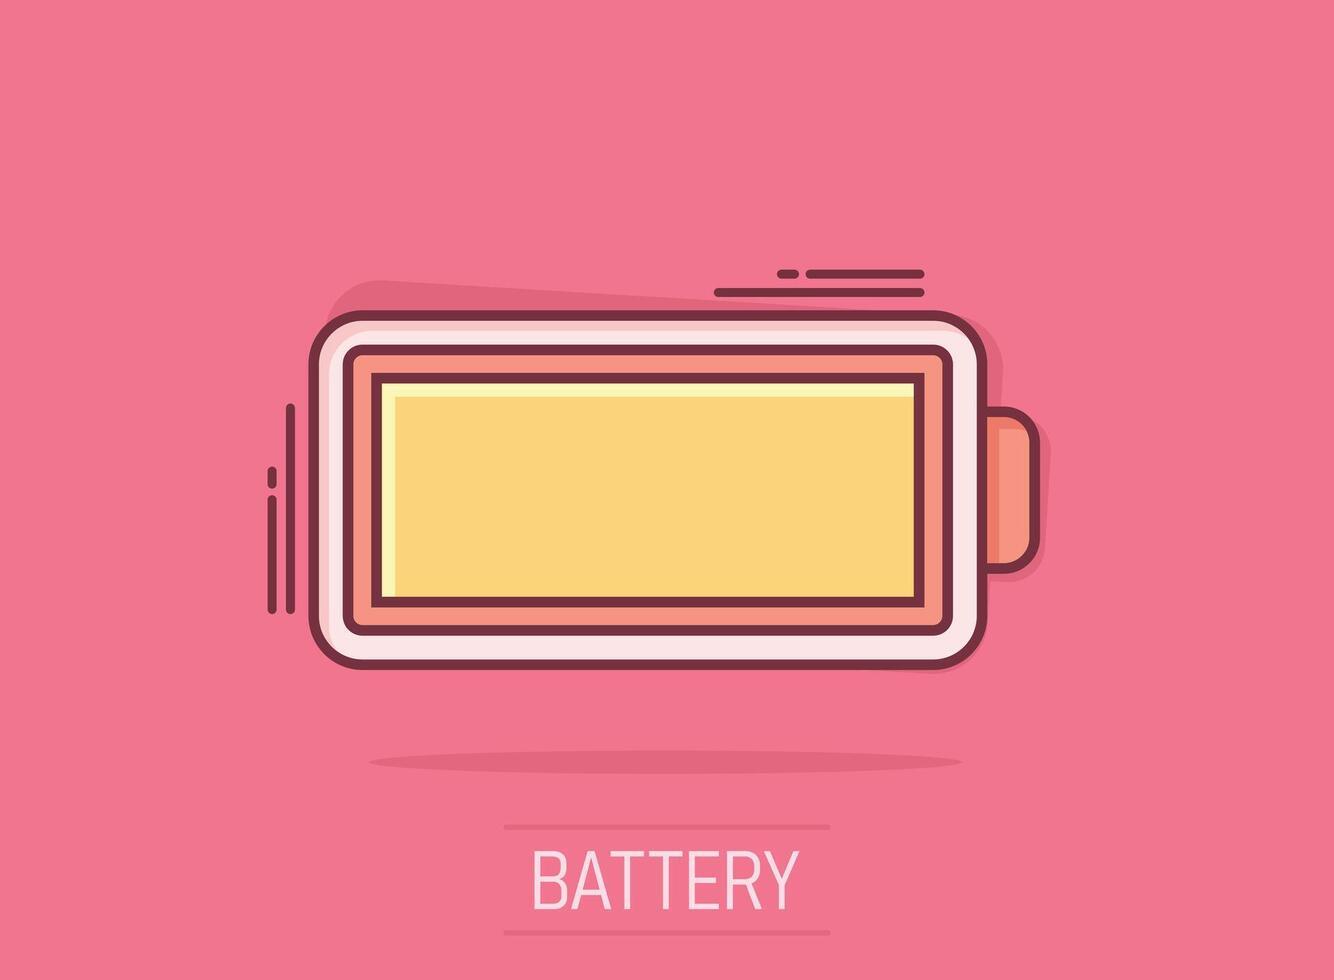 batteri avgift ikon i komisk stil. kraft nivå tecknad serie vektor illustration på isolerat bakgrund. litium ackumulator stänk effekt företag begrepp.